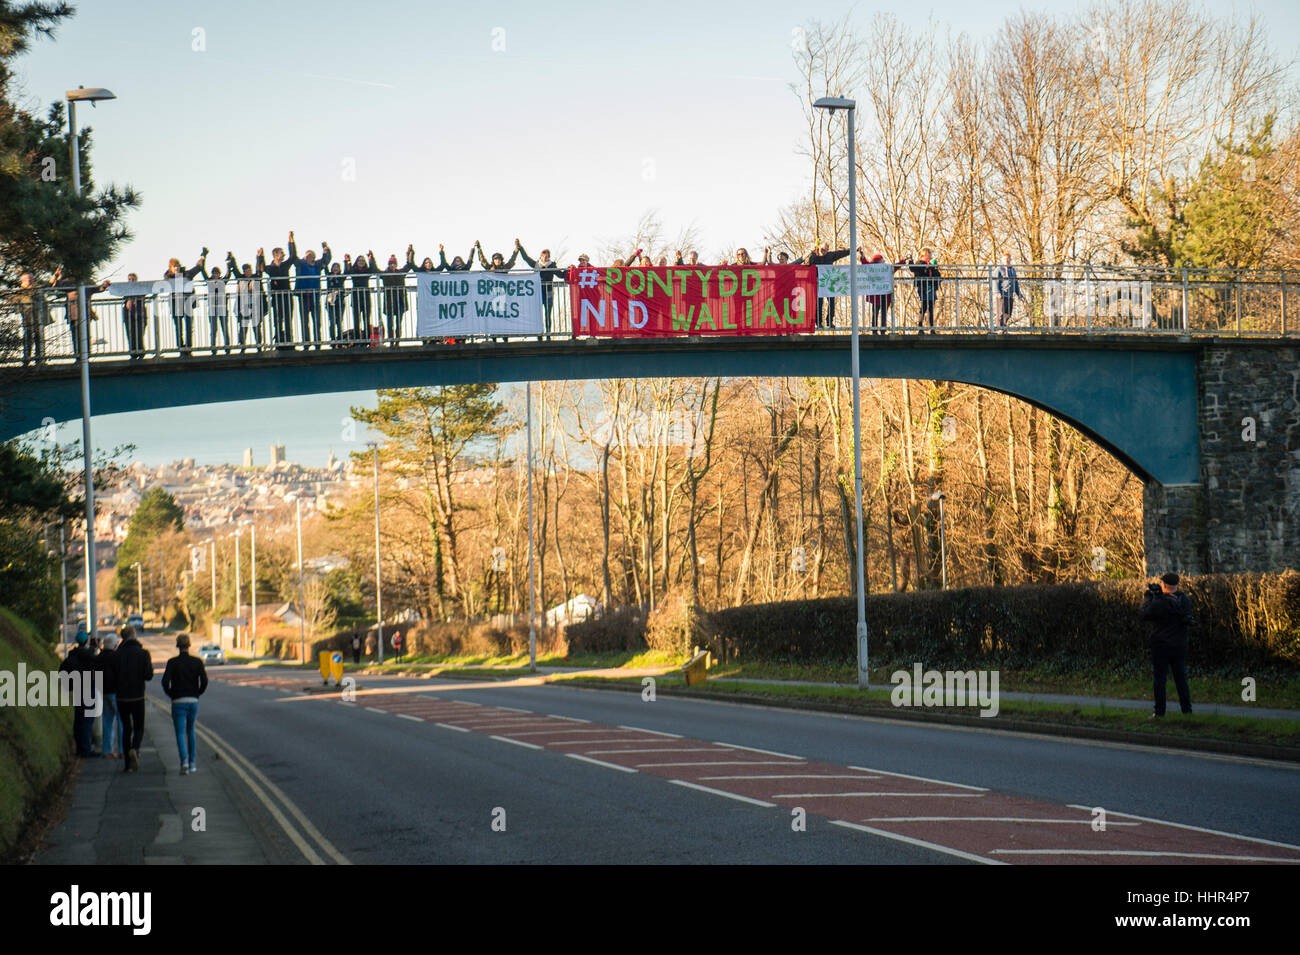 Vendredi 20 janvier 2017, le Pays de Galles Aberystwyth UK Construire des ponts pas des murs : à 11h le vendredi 20 mai 2017, les gens dévoilent leur bannières sur la passerelle au-dessus de la route principale dans le cadre de l'Aberystwyth UK-bannière large drop des ponts à travers le pays, le jour que l'atout de Donald est nommé le nouveau président des États-Unis. Selon les organisateurs, ils veulent "d'envoyer un simple message d'espoir, et sans équivoque. Nous allons construire des ponts, pas des murs, d'un monde pacifique et juste se débarrasser de l'oppression et de la haine." Photo : Keith Morris / Alamy Vivre NewsBuo Banque D'Images